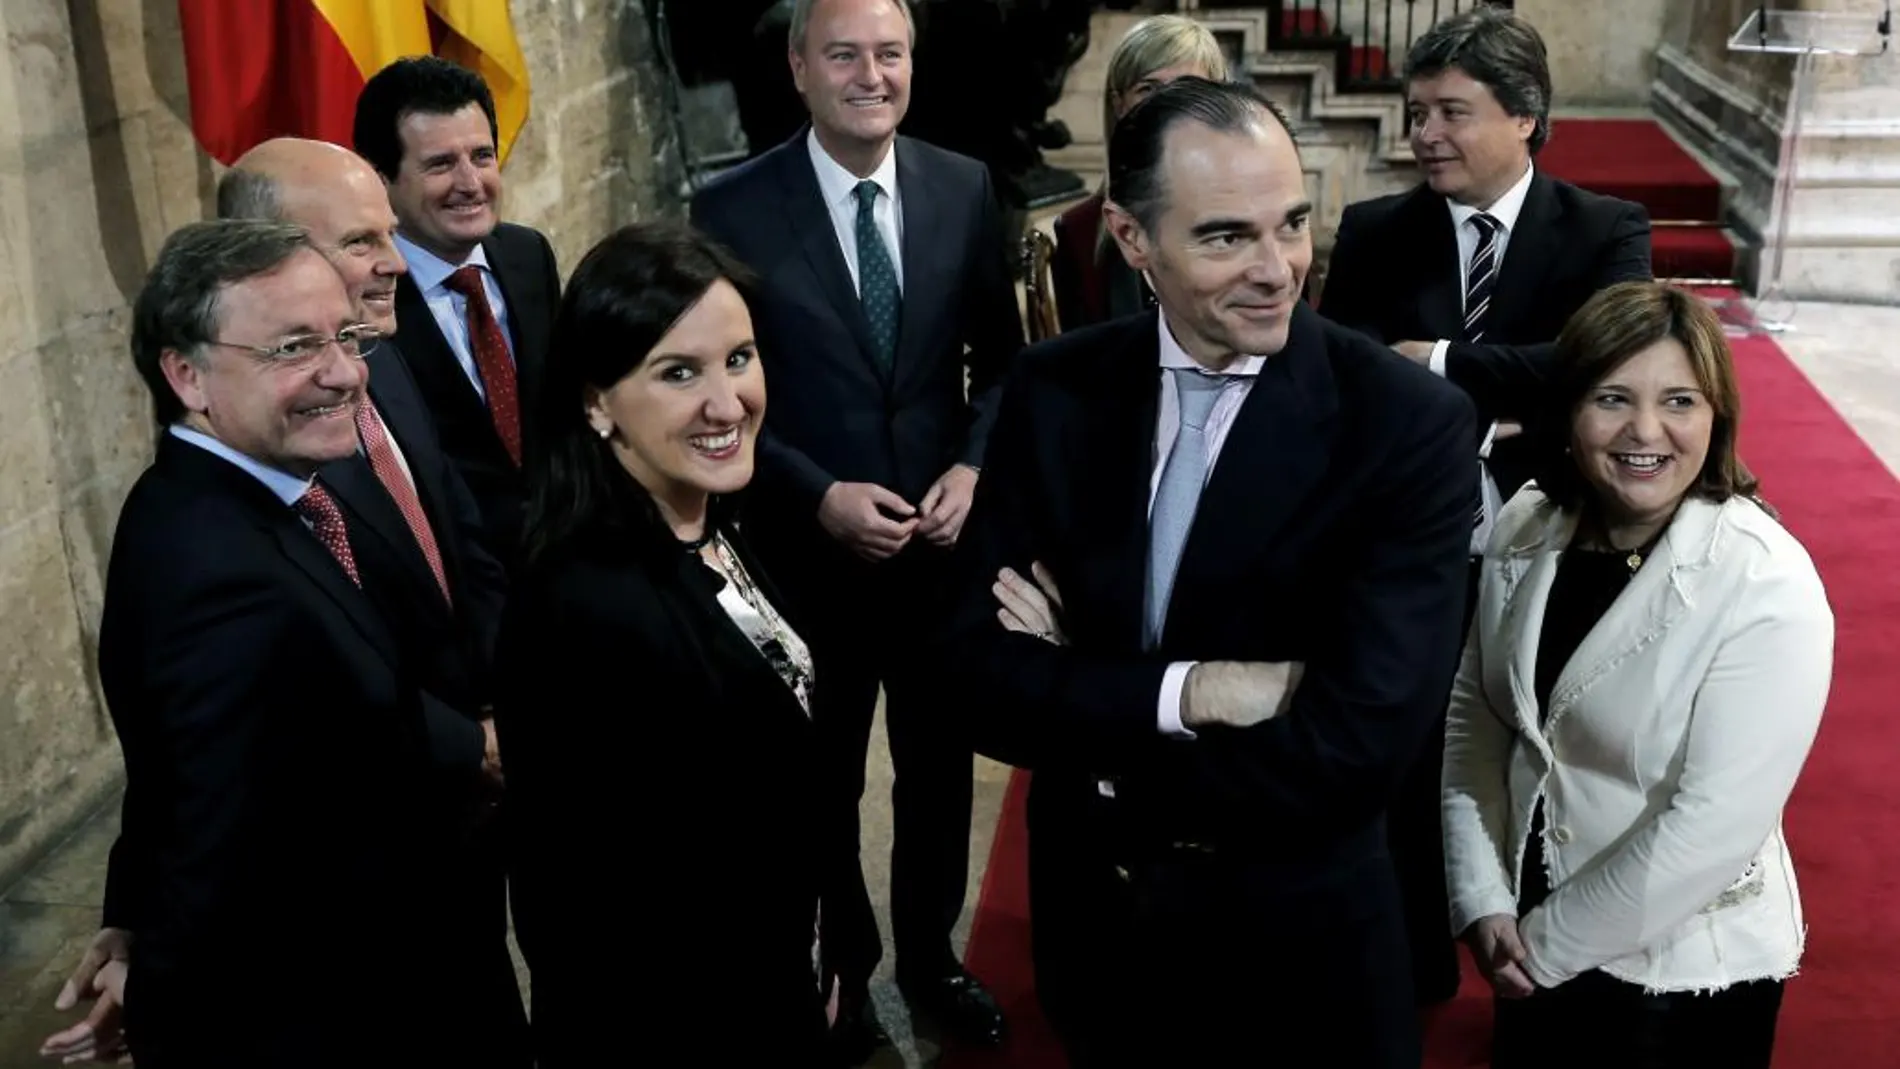 El president de la Generalitat Valenciana, Alberto Fabra (c) , junto a los miembros de su Gobierno, tras firmar el decreto de disolución de Les Corts Valencianes y la convocatoria de elecciones autonómicas